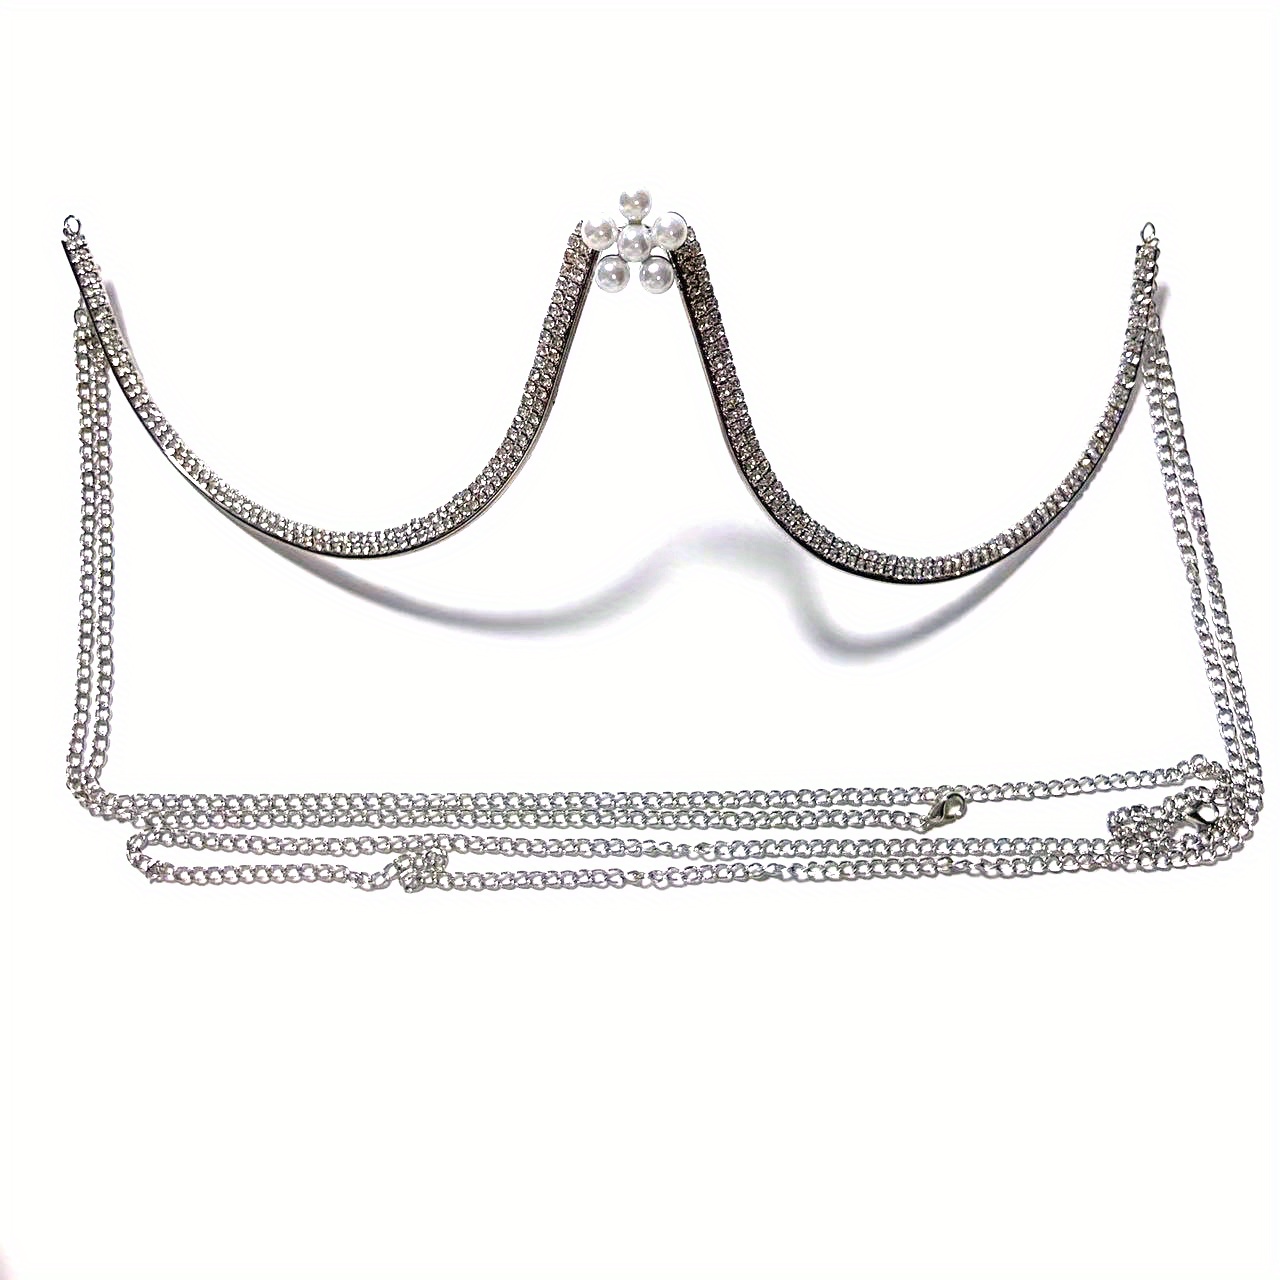 Buy Rhinestone Chest Bracket Bras Chain Body Jewelry Sexy Bikini Crystal  Body Chain Rhinestone Bra Underwear Body Chain for Women at